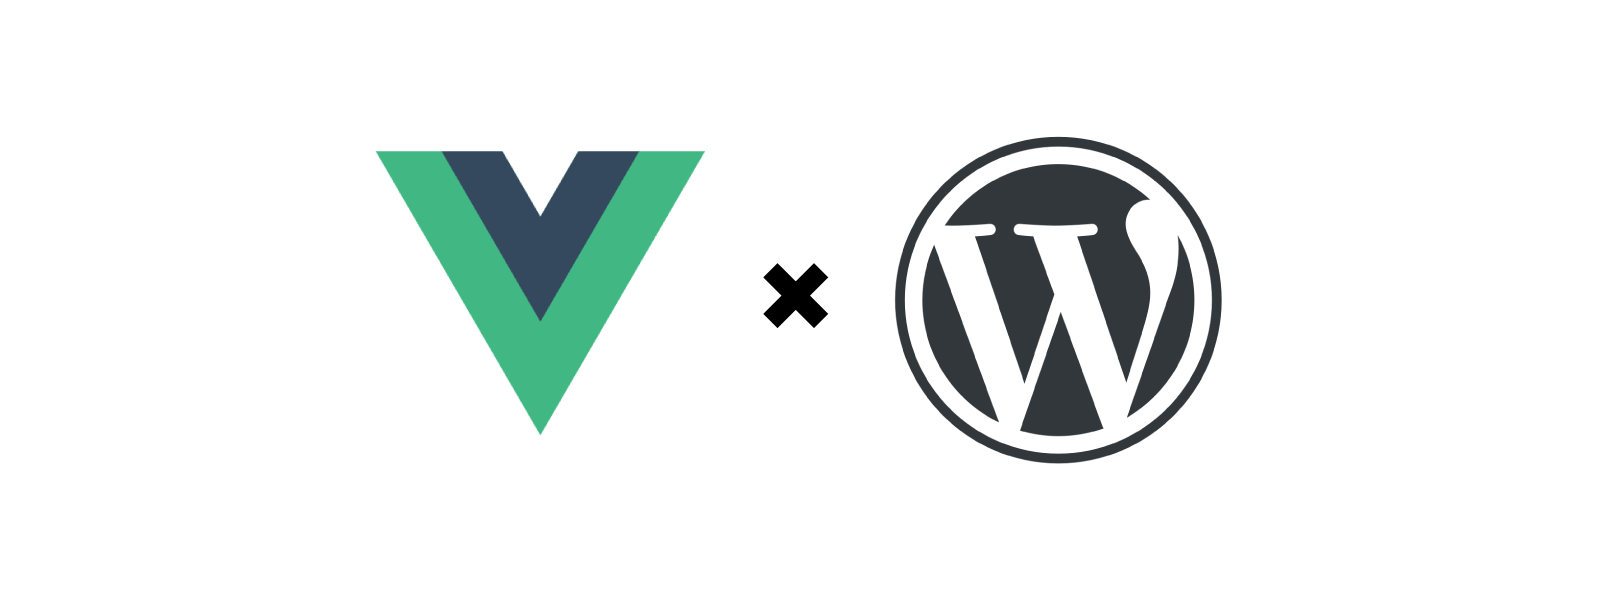 Vue.js と REST API で WordPress のテーマを作ってます。